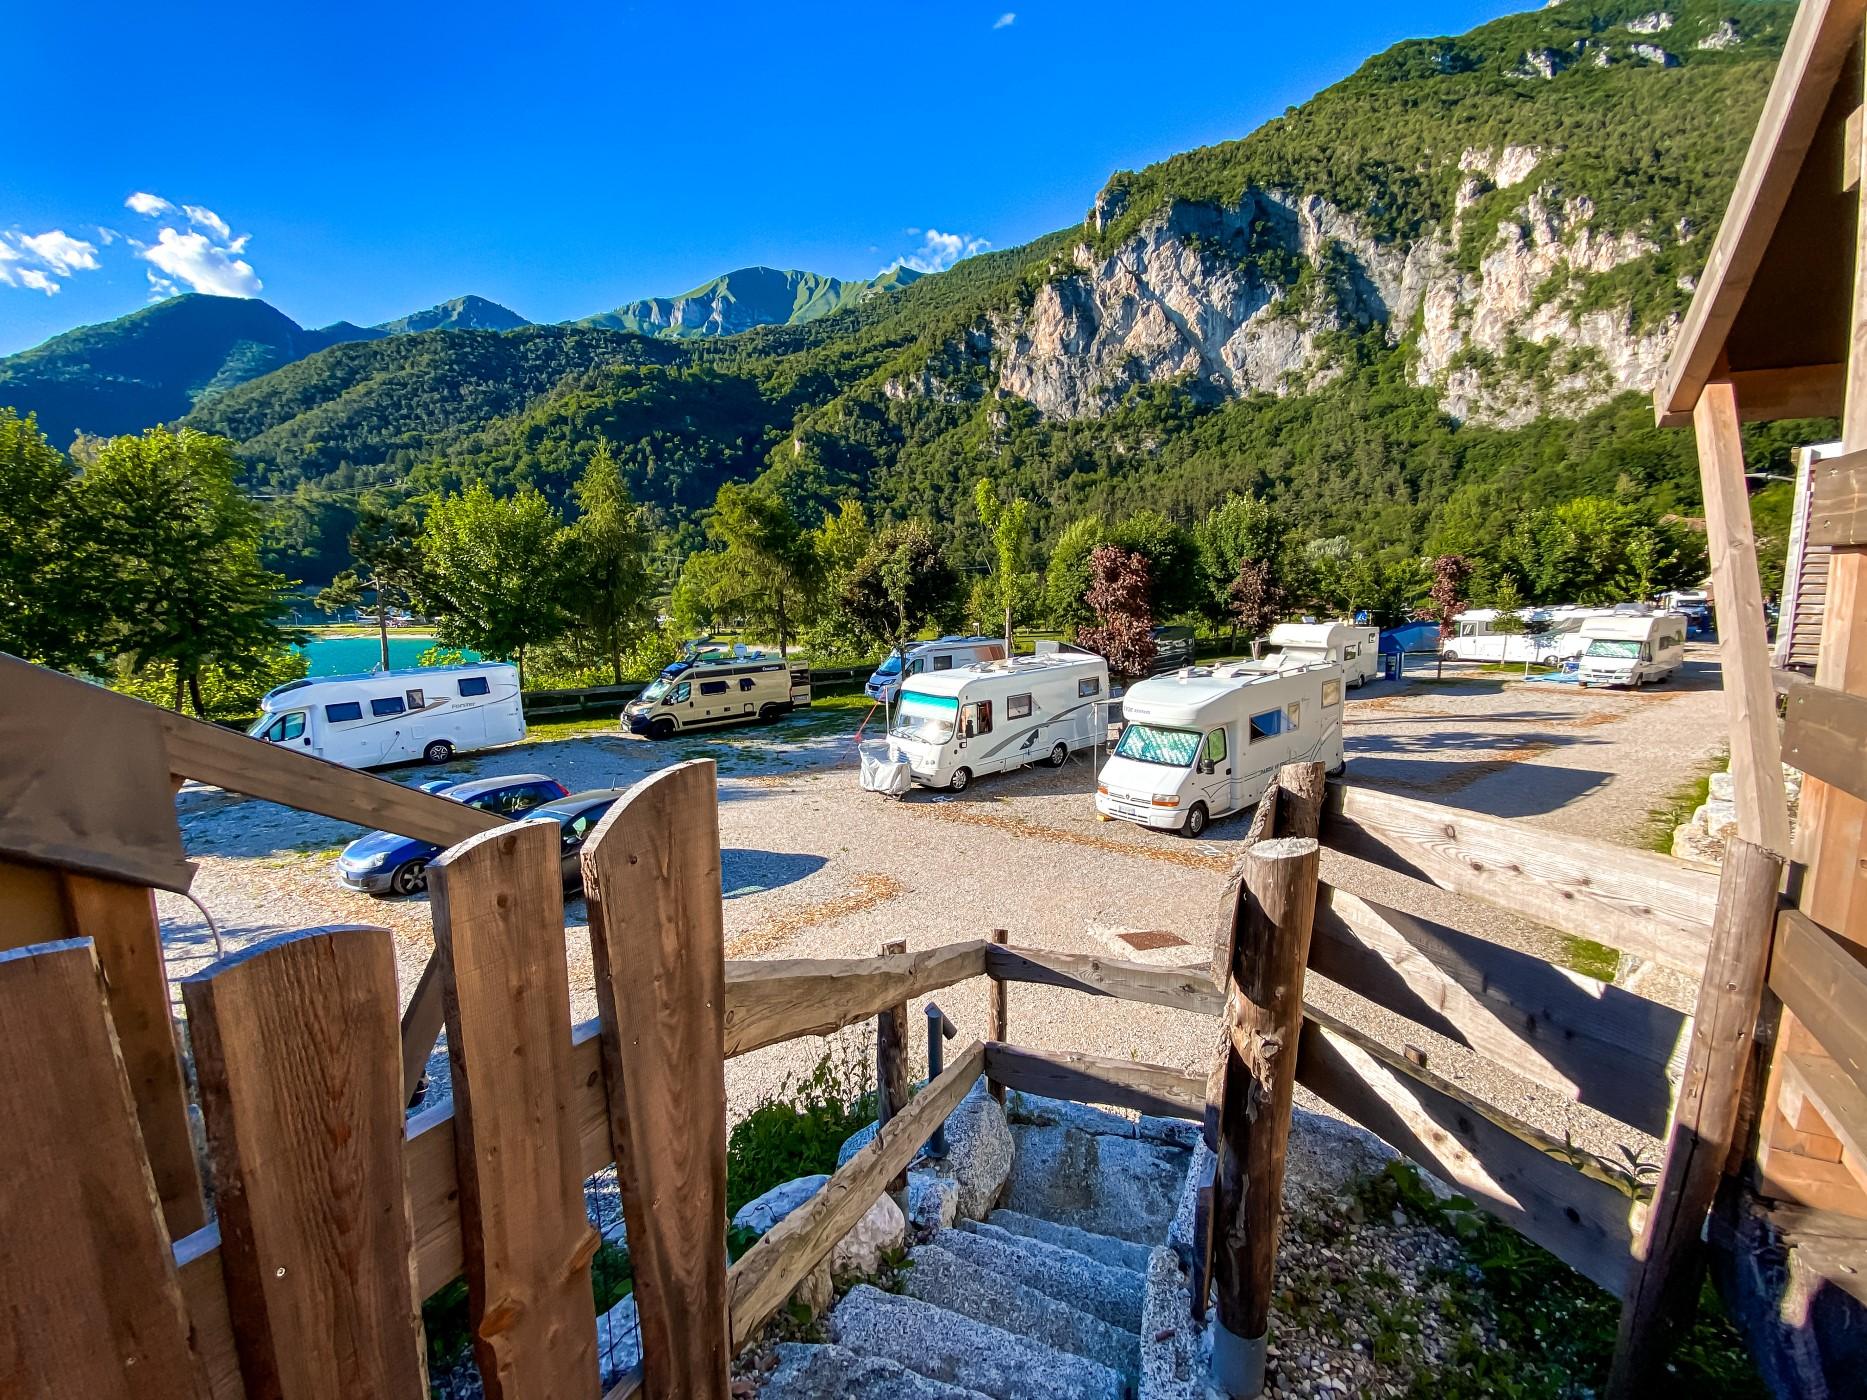 Wakacje w kamperze we Włoszech